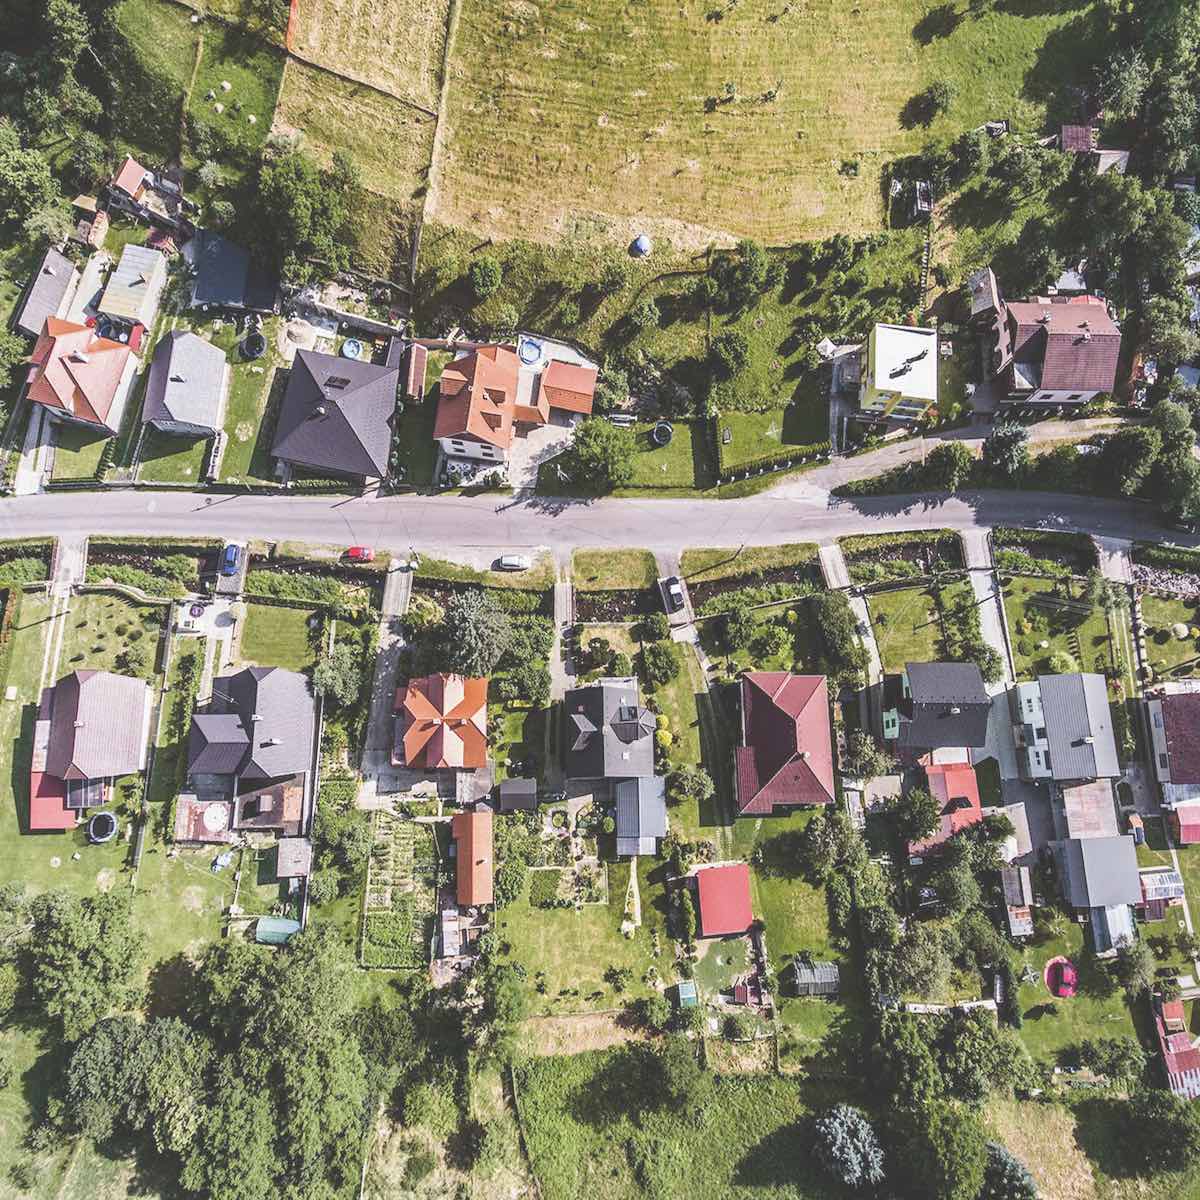 Overhead shot of a suburban neighborhood.